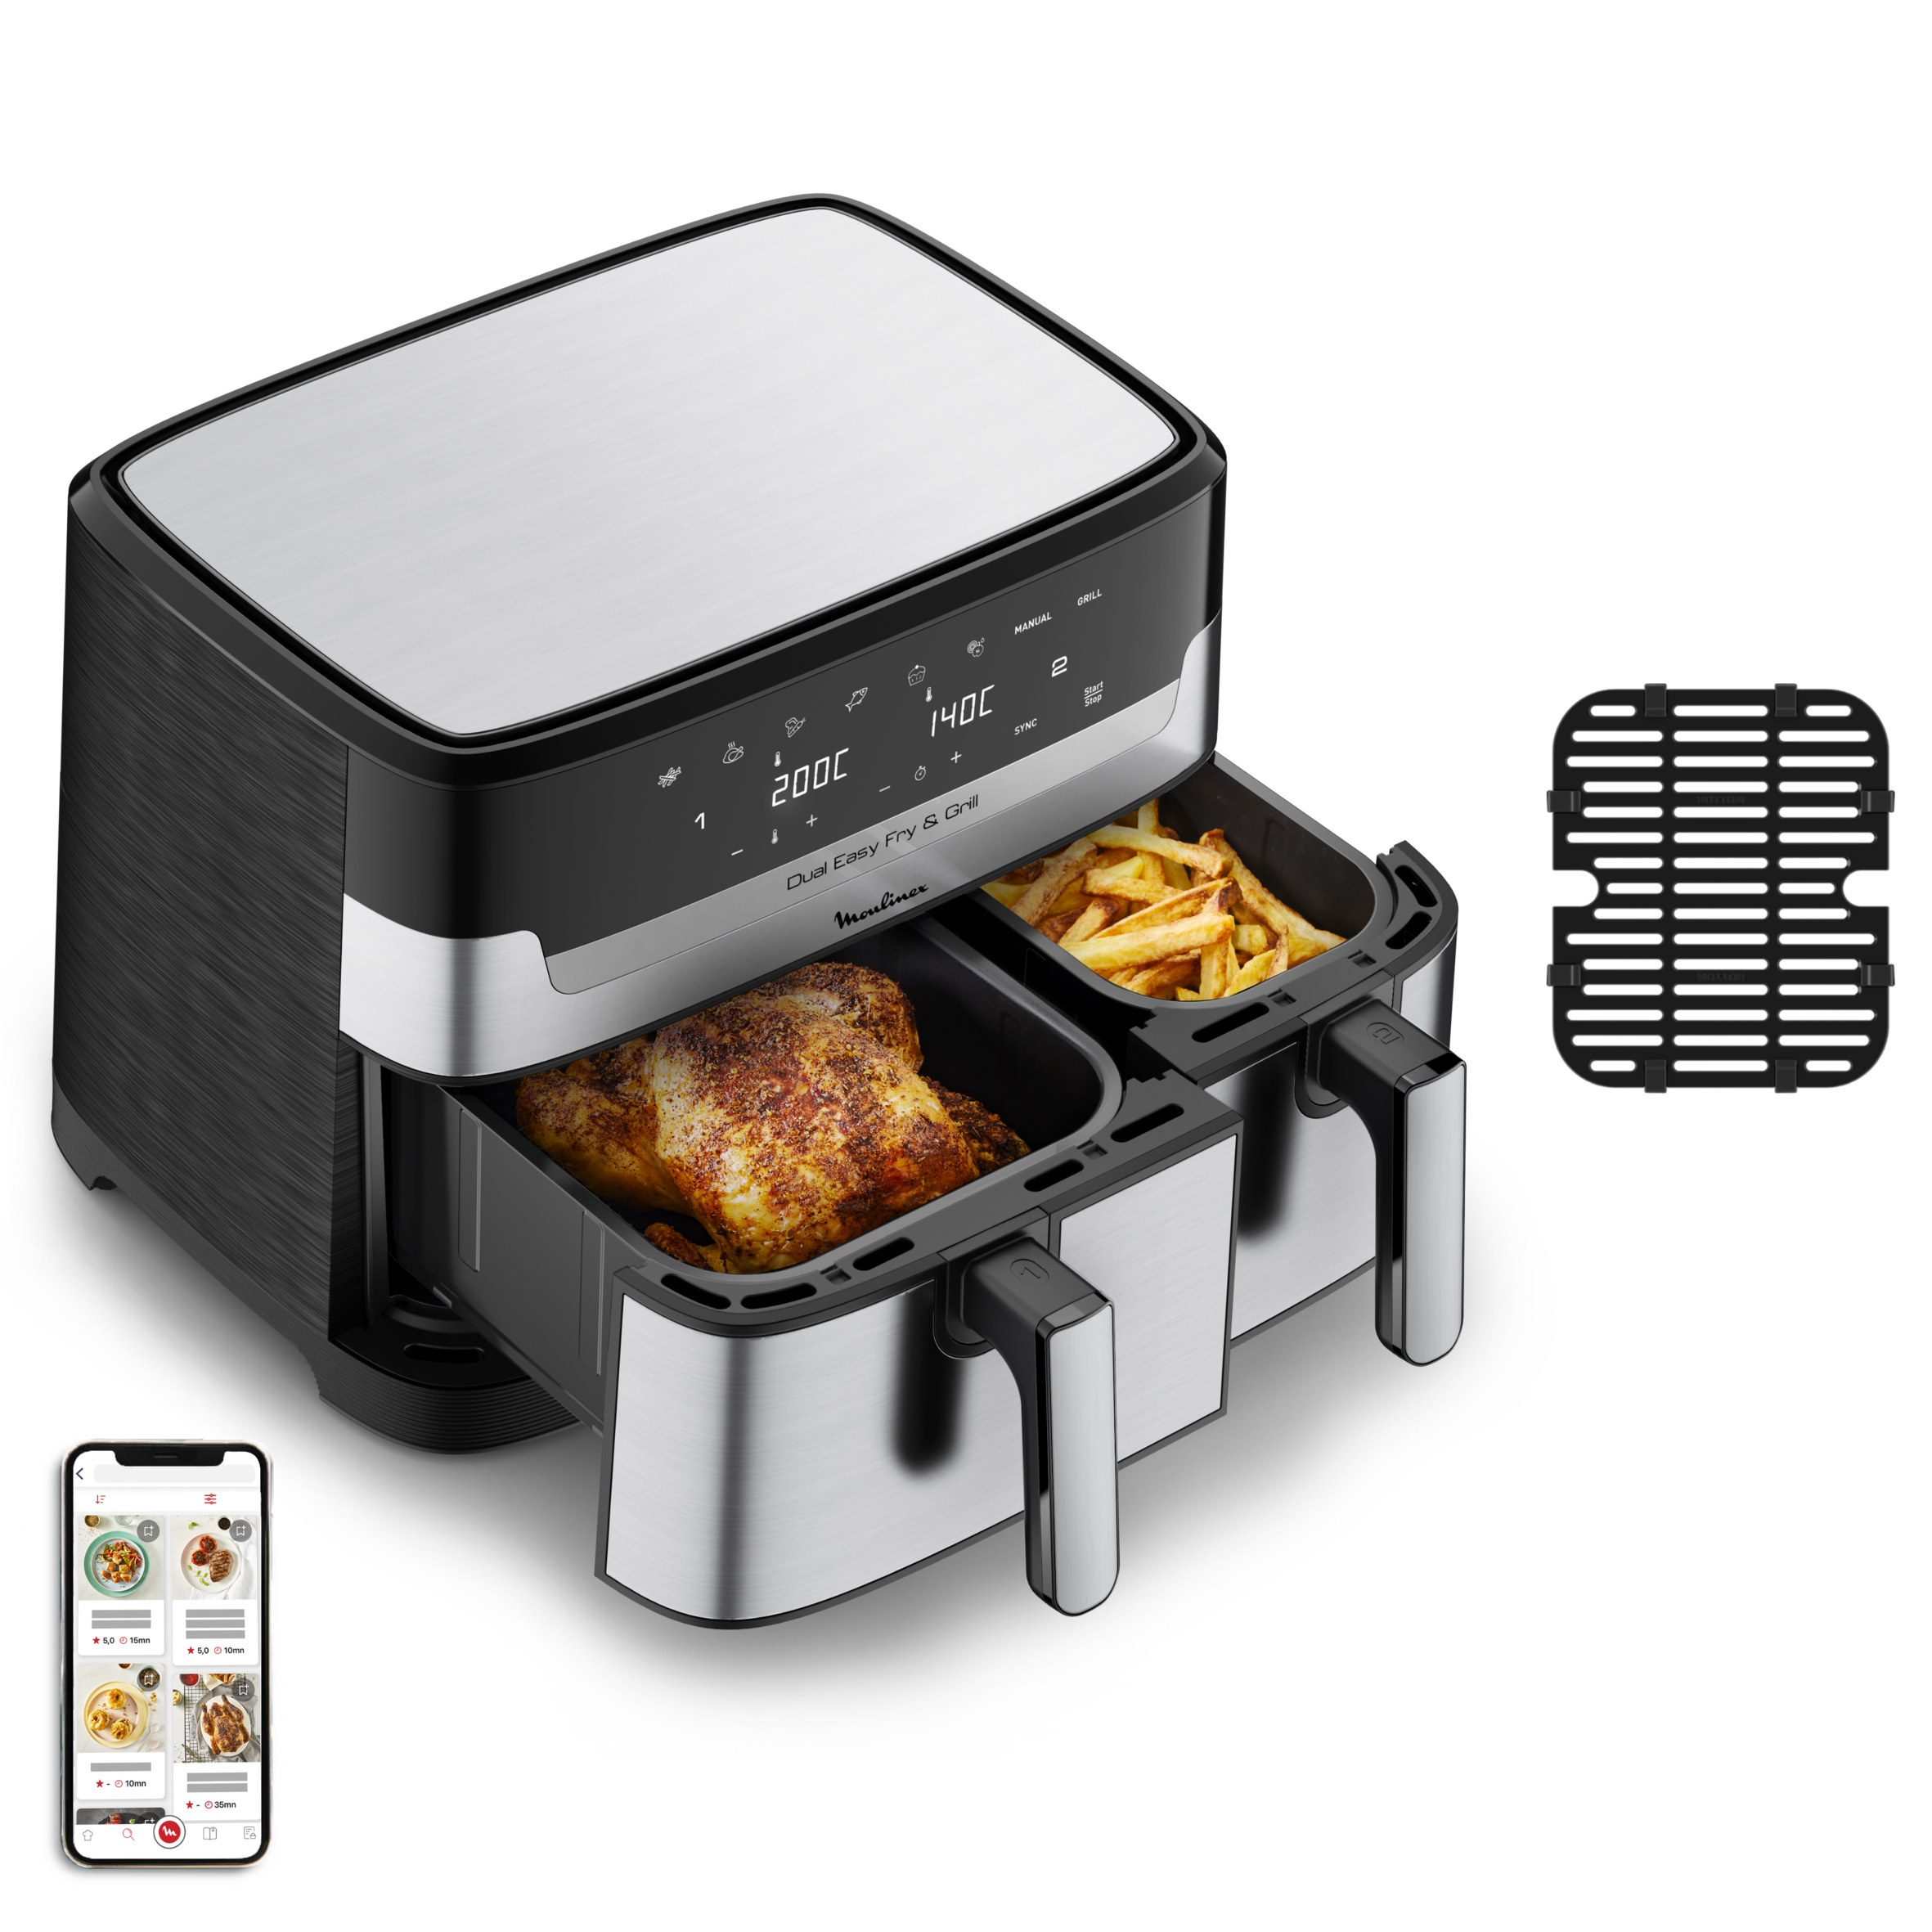 Moulinex Dual Easy Fry 8,3 L – Freidora de aire dual, ahorro energético de  hasta 70%, capacidad de 5,2 L y 3,1 L, 7 programas, resultados crujientes,  apto lavavajillas, recetario digital, EZ9018 : : Hogar y cocina